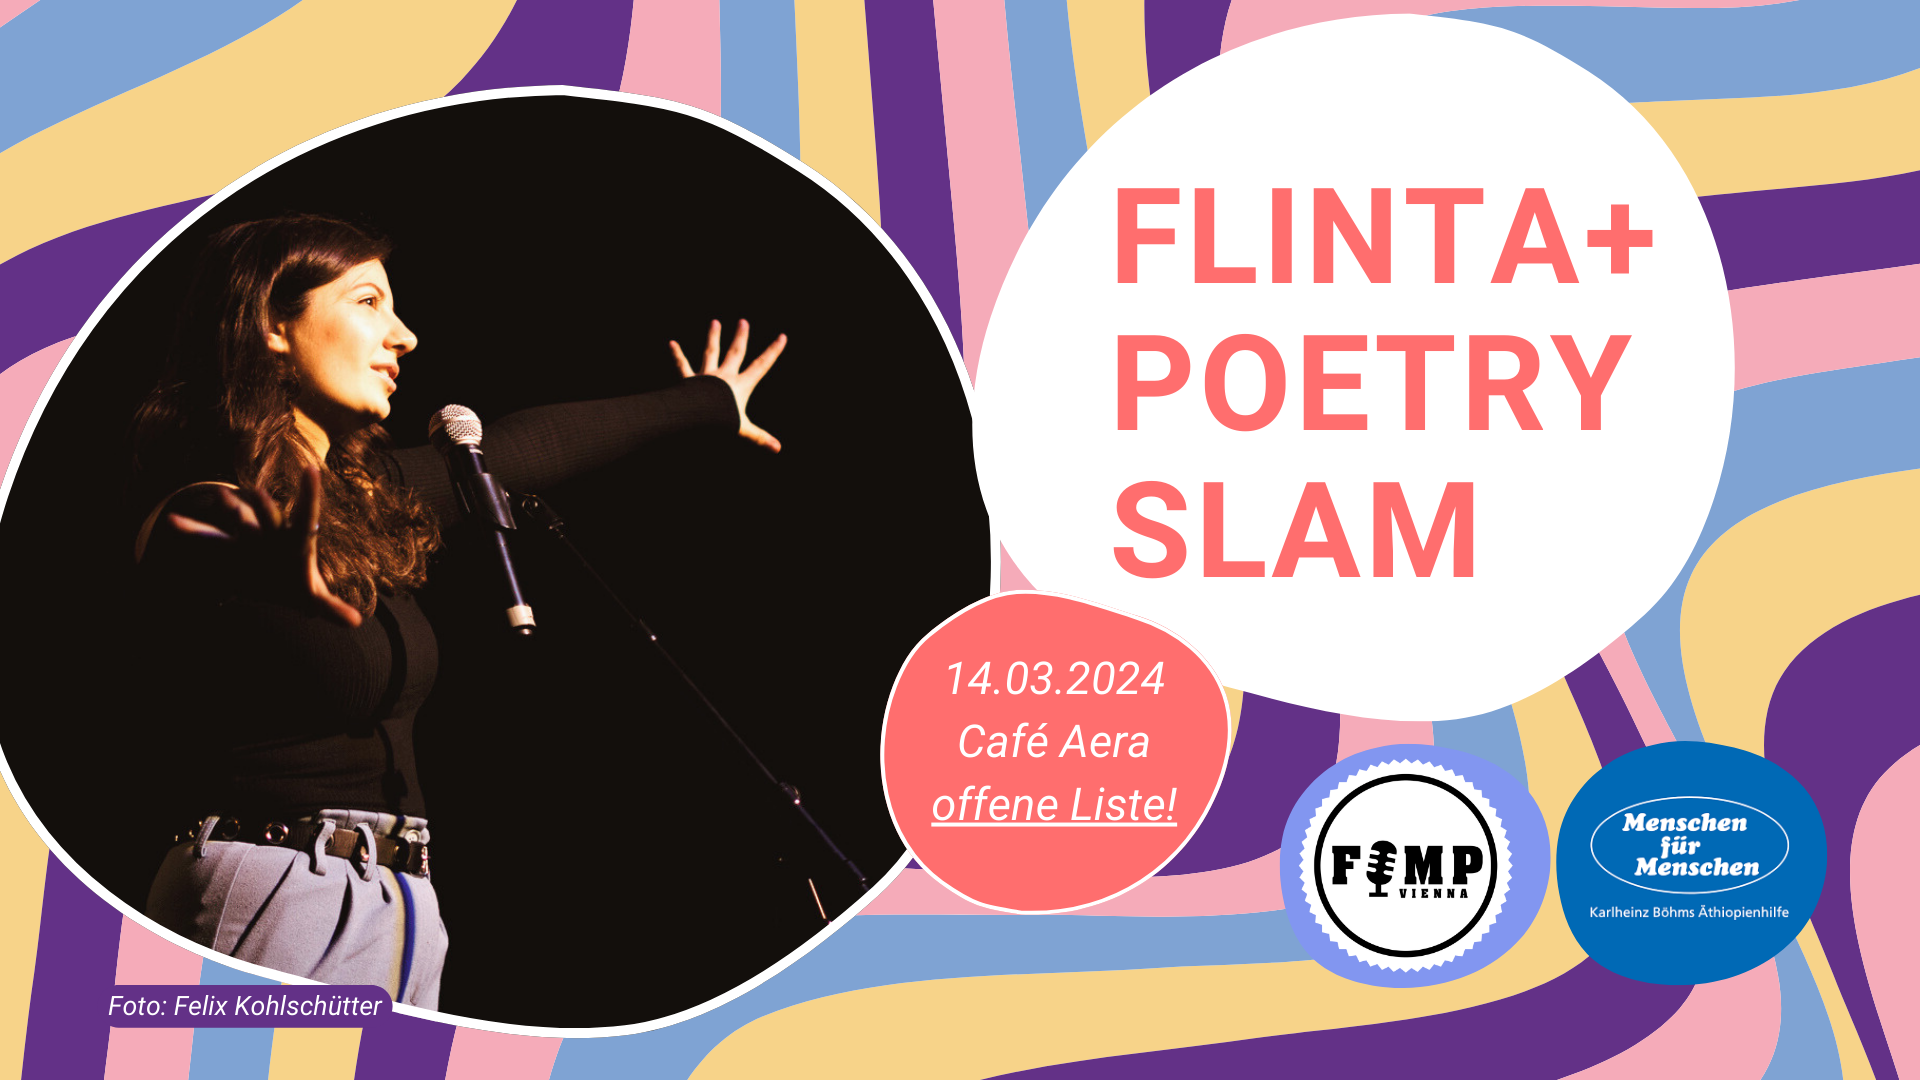 FLINTA+ Poetry Slam